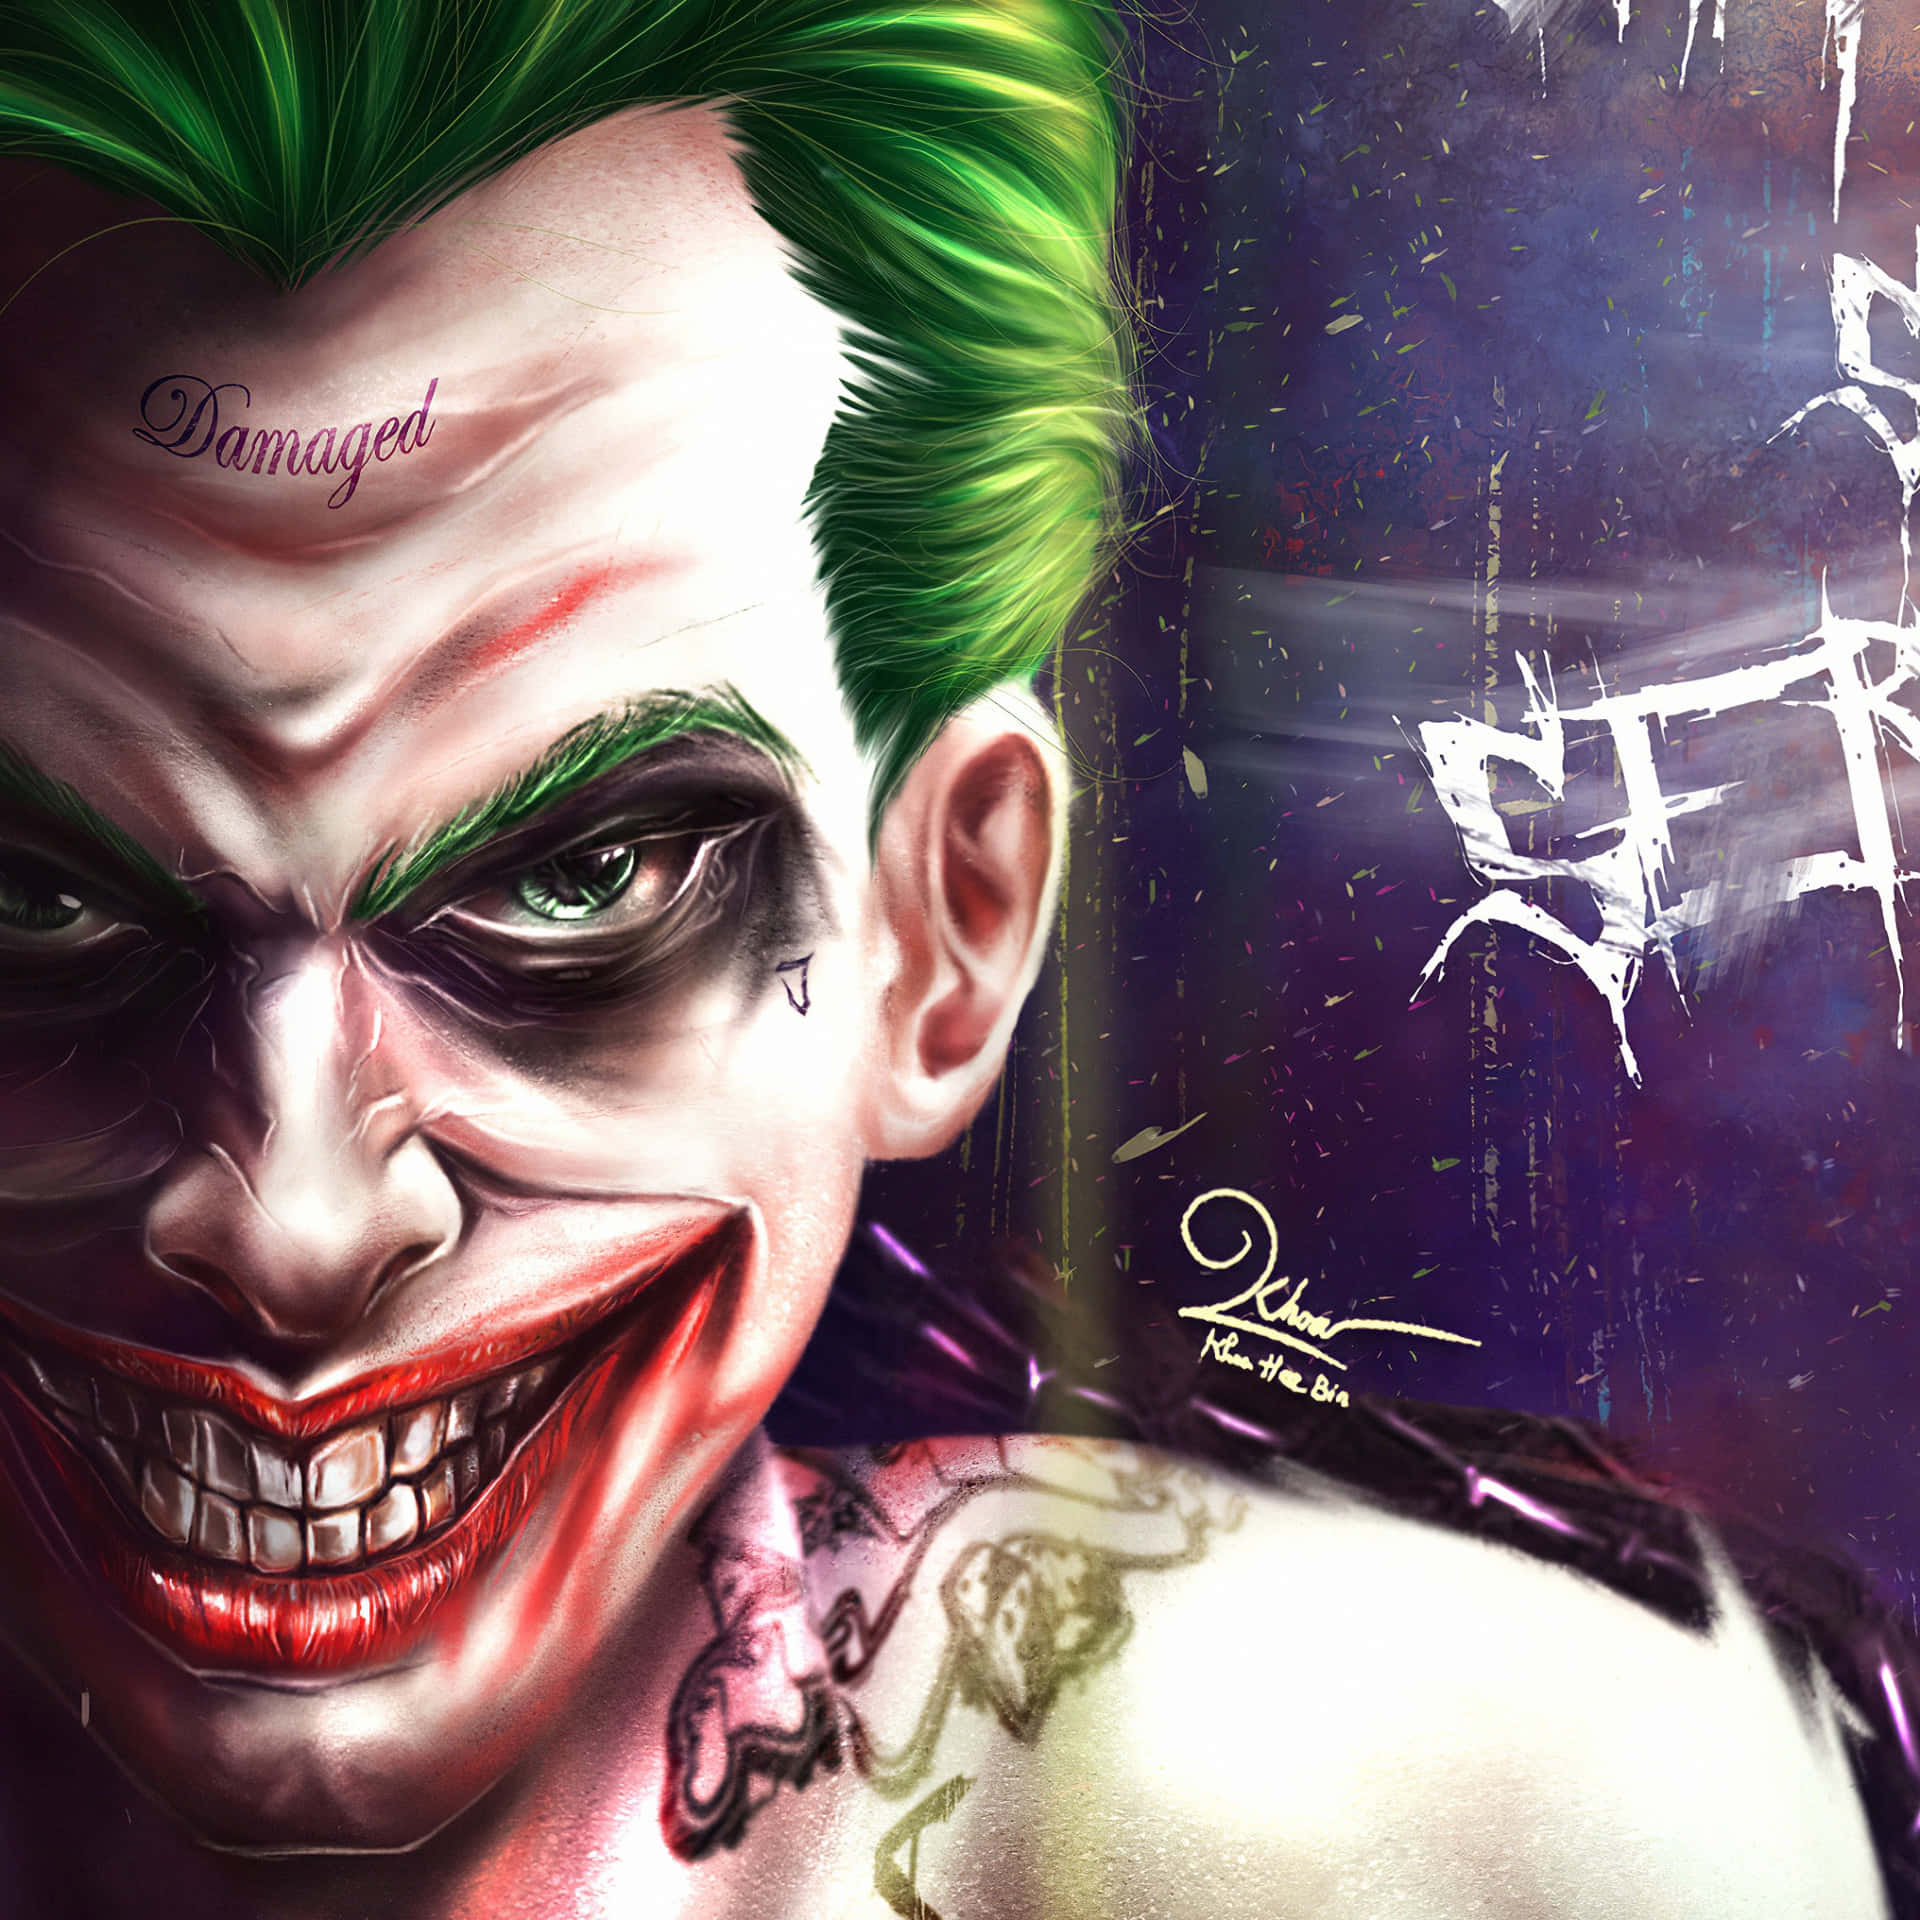 Cool Joker Wallpaper